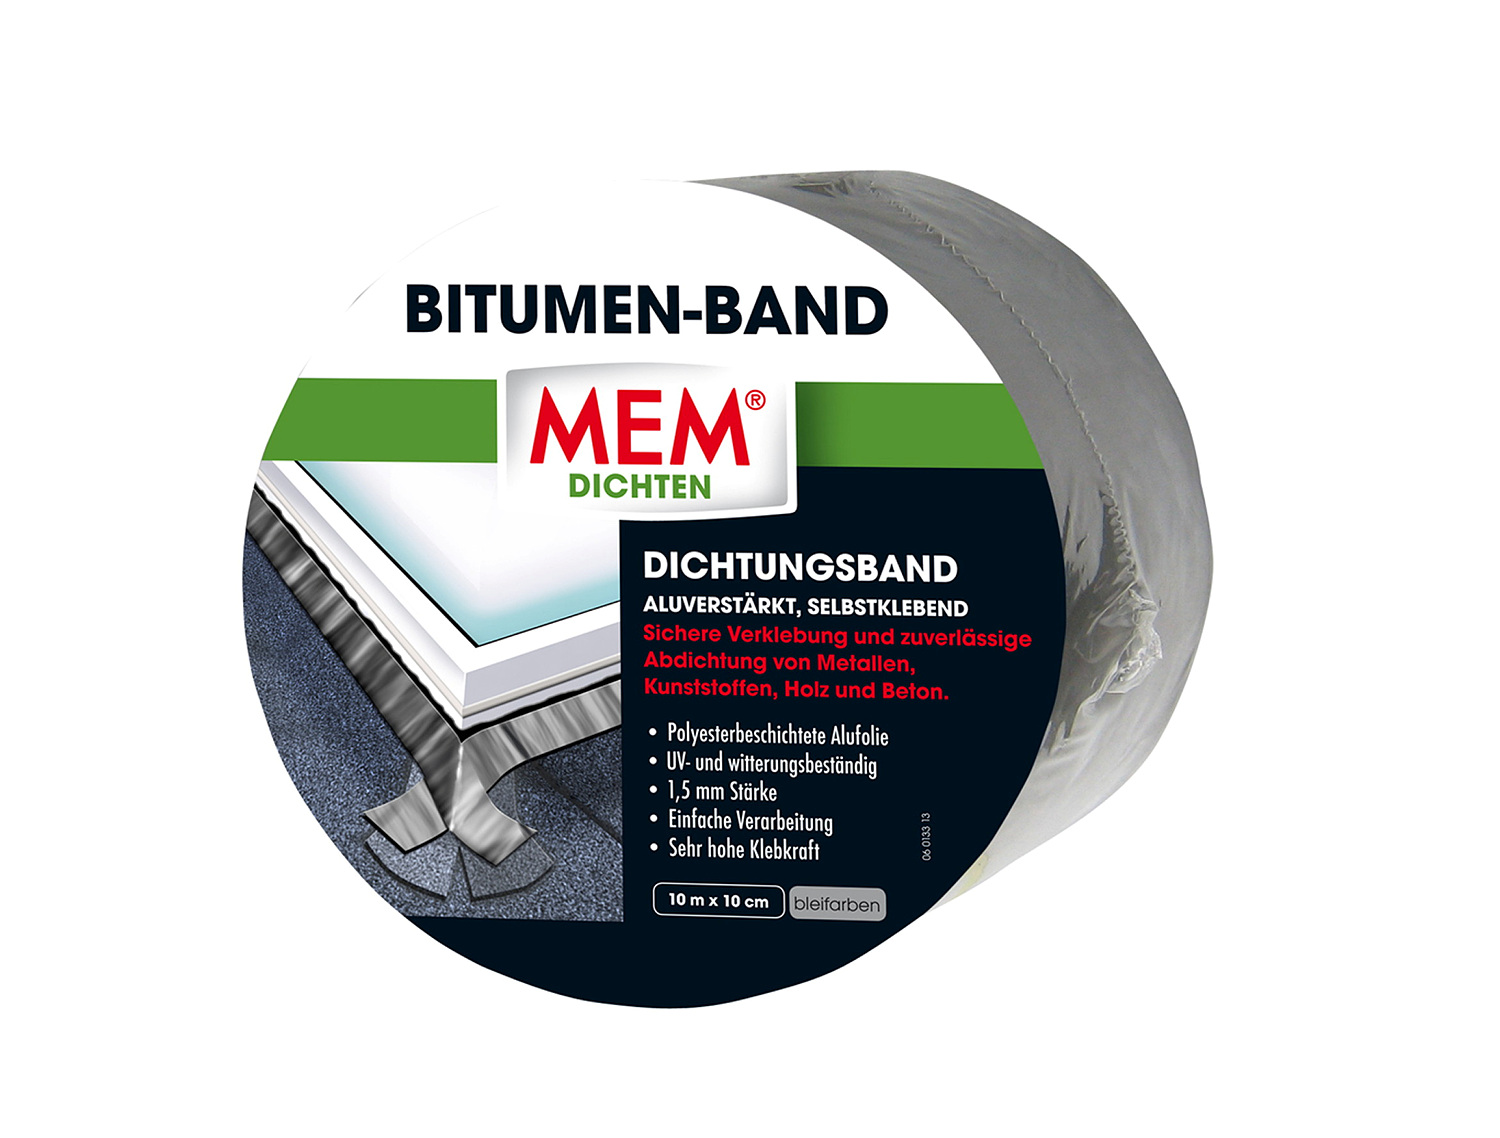 MEM® Bitumen-Band, 10 m x 10 cm, Blei